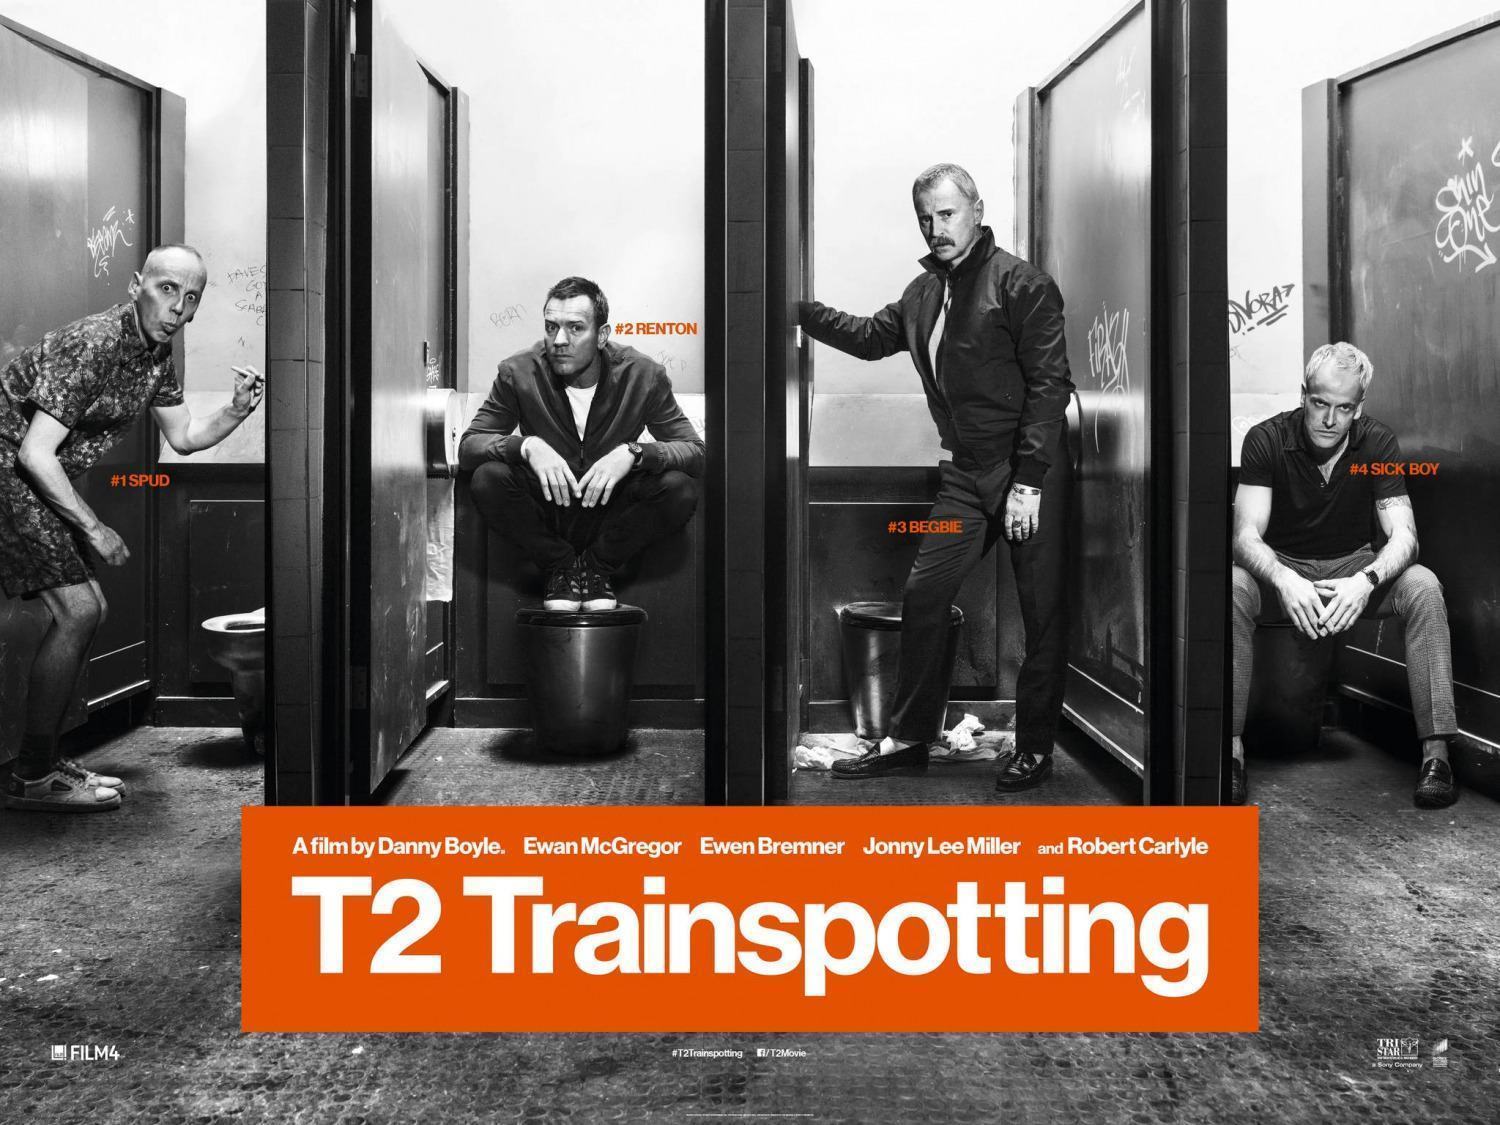 T2 Trainspotting | Veja as mudanças na vida de Begbie em novo teaser do longa